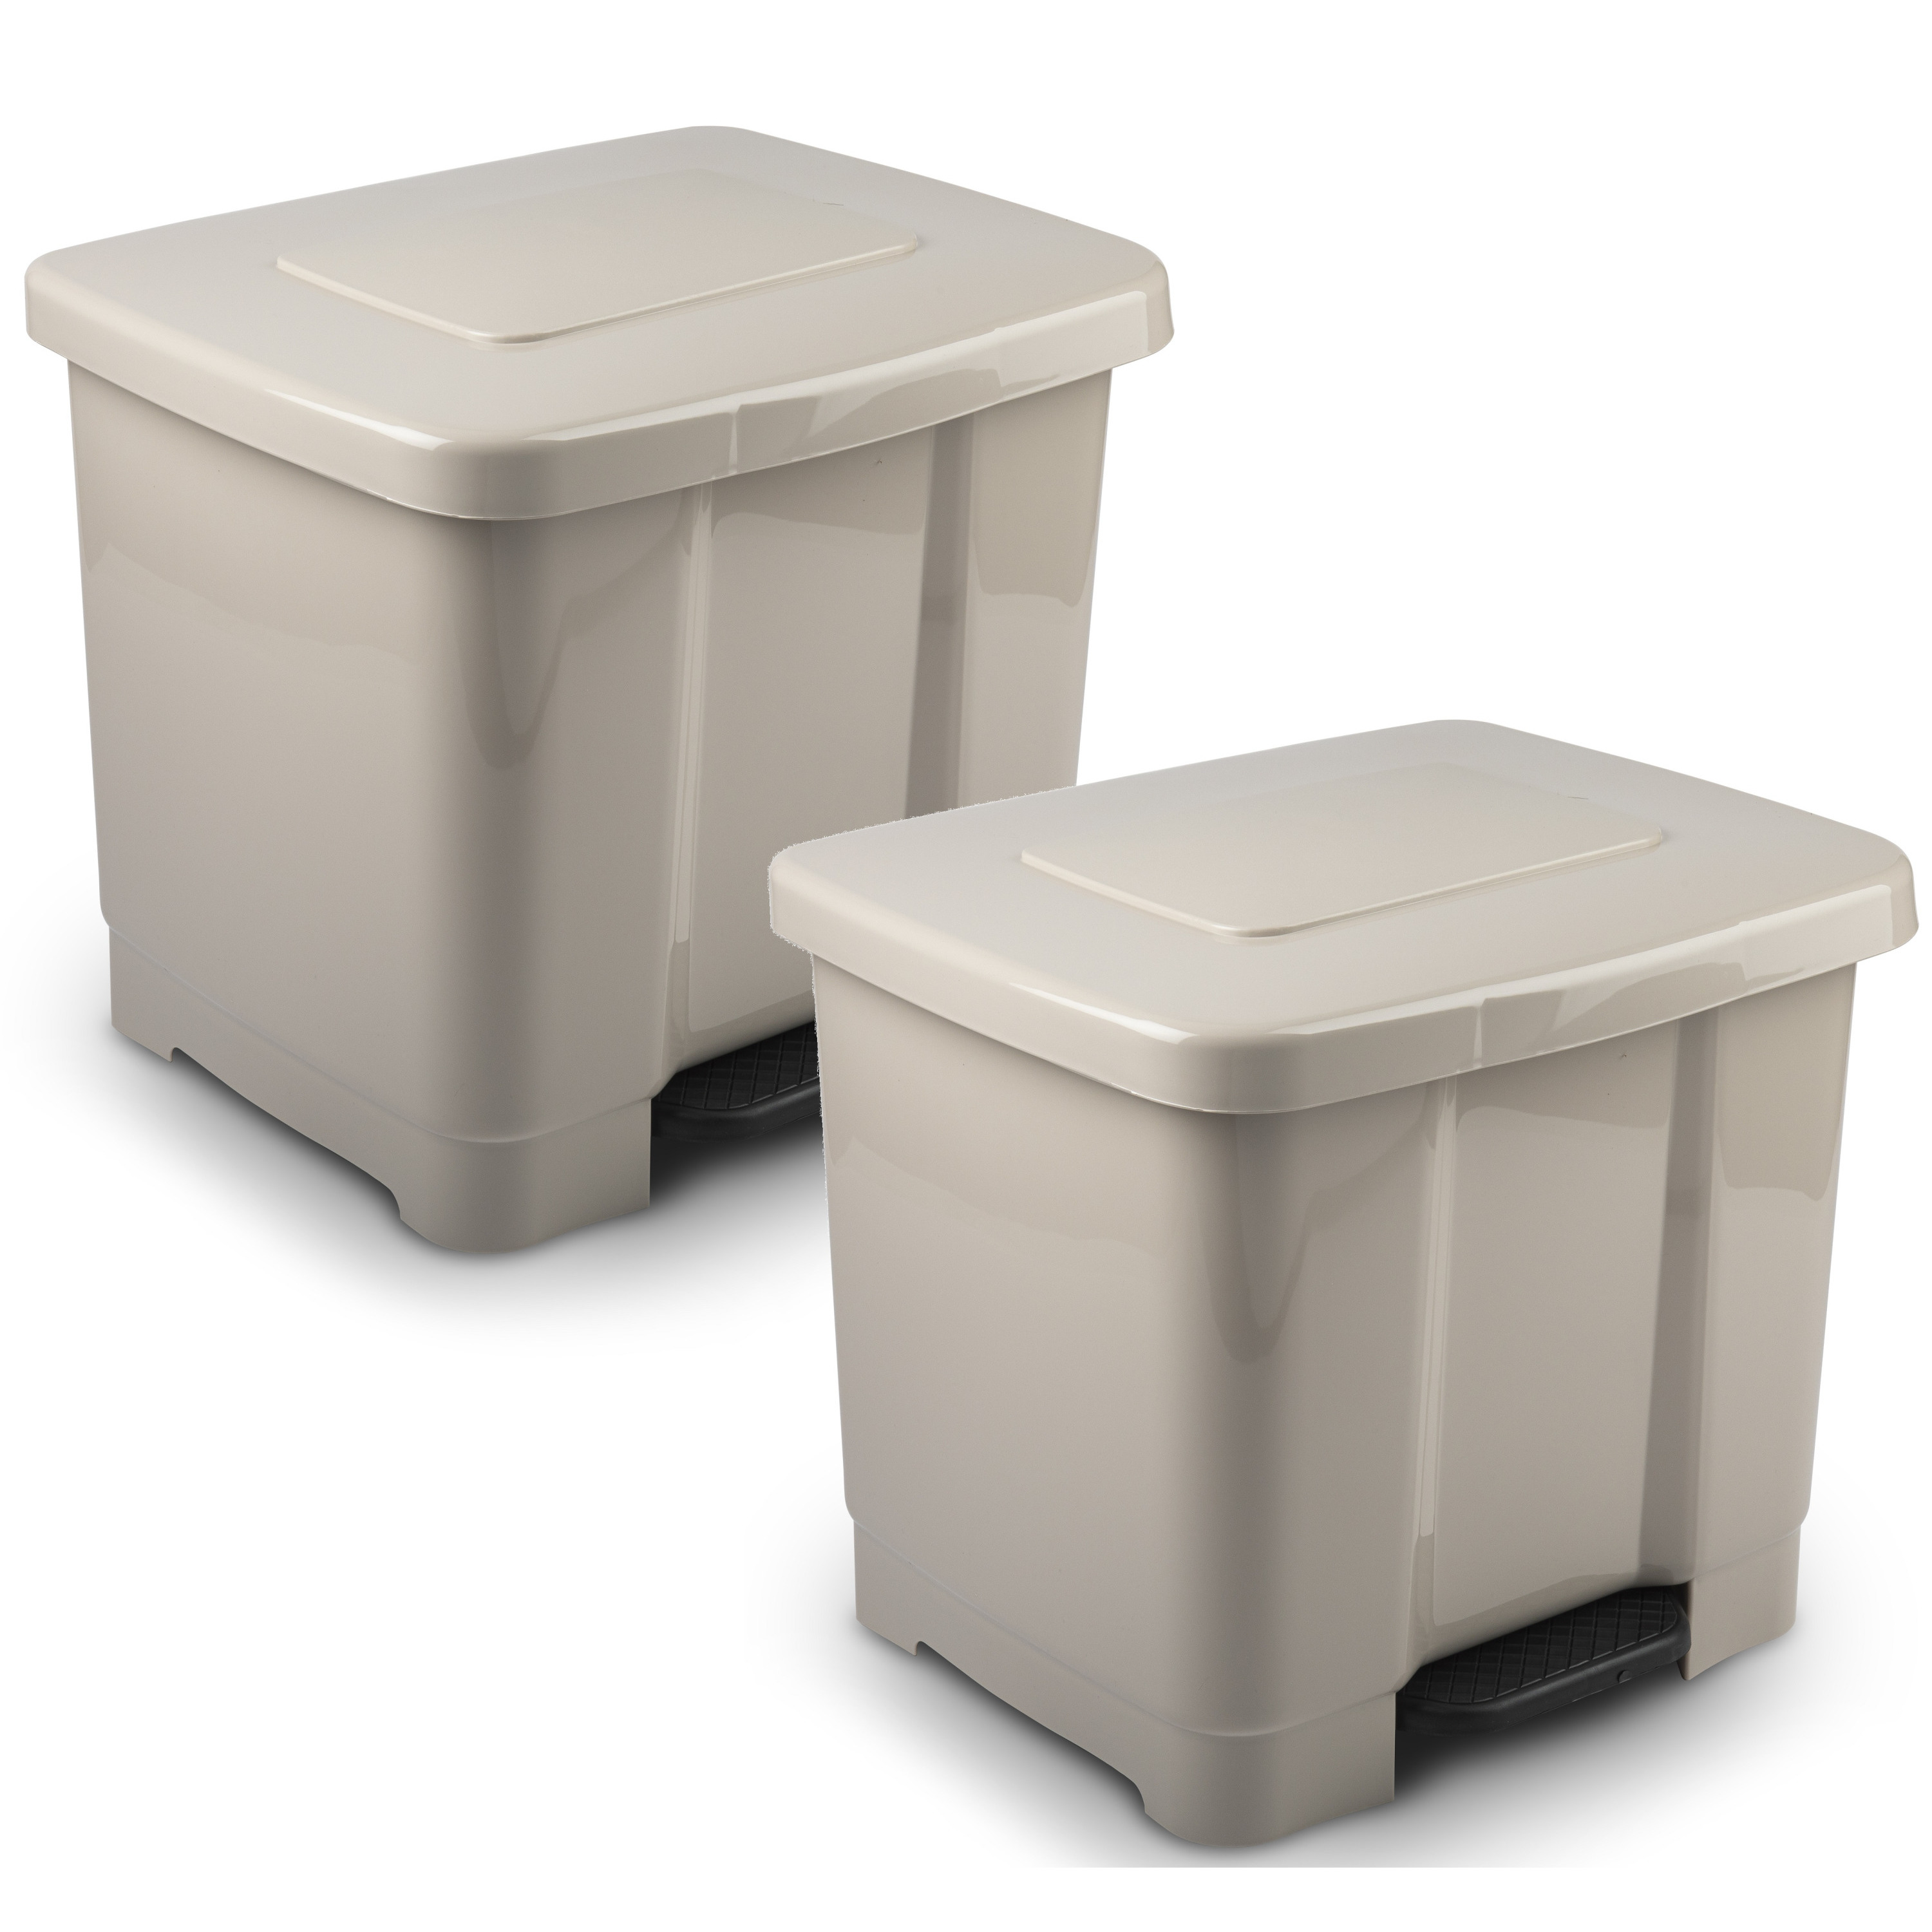 2x Stuks dubbele-2-vaks afvalemmer-vuilnisemmer taupe 35 liter met deksel en pedaal